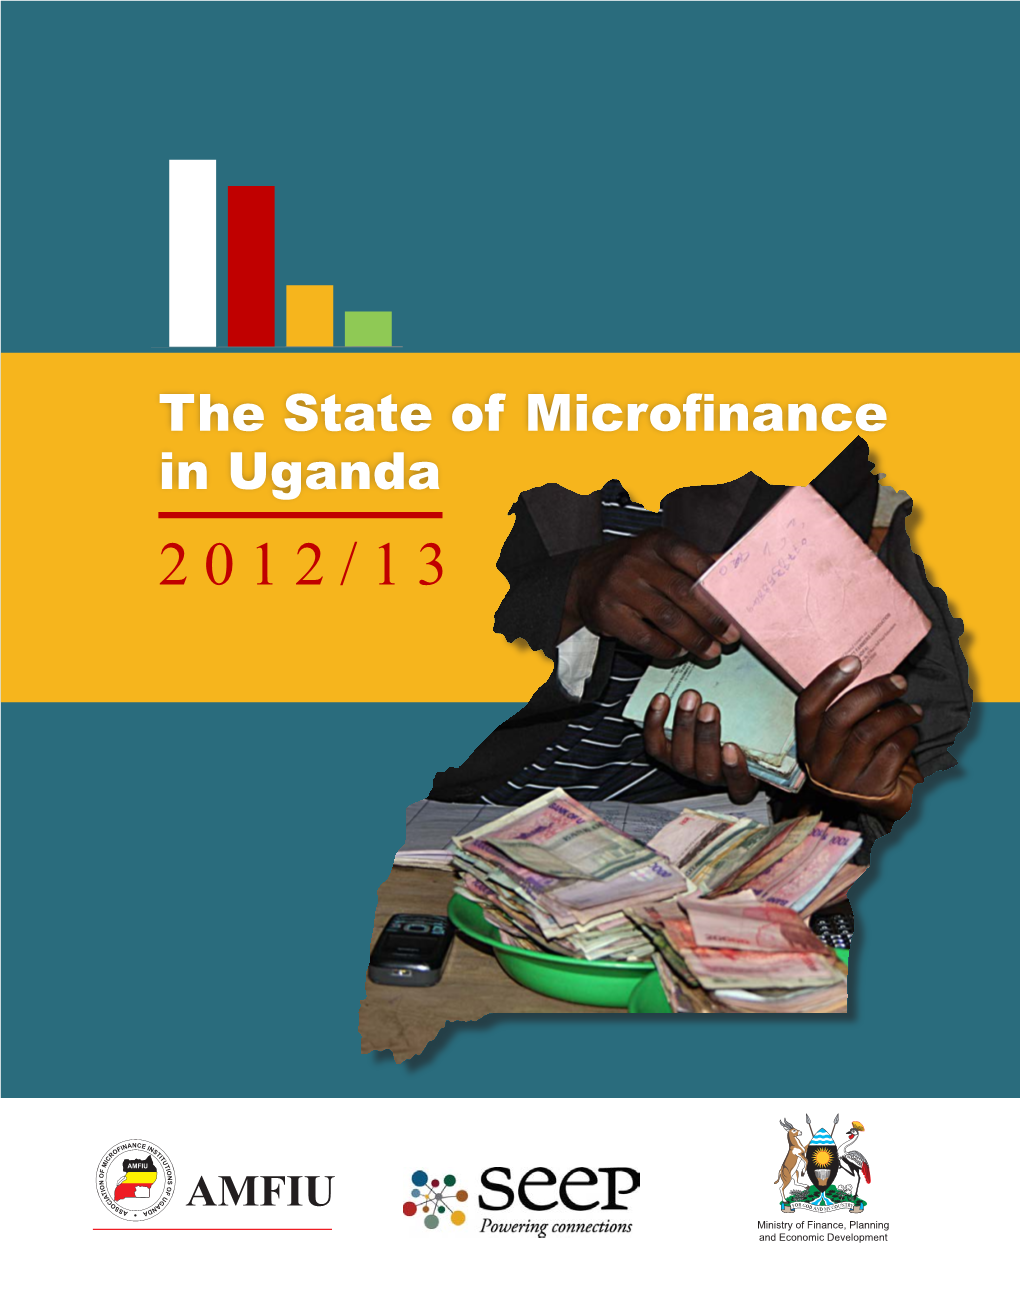 The State of Microfinance in Uganda 2012/13